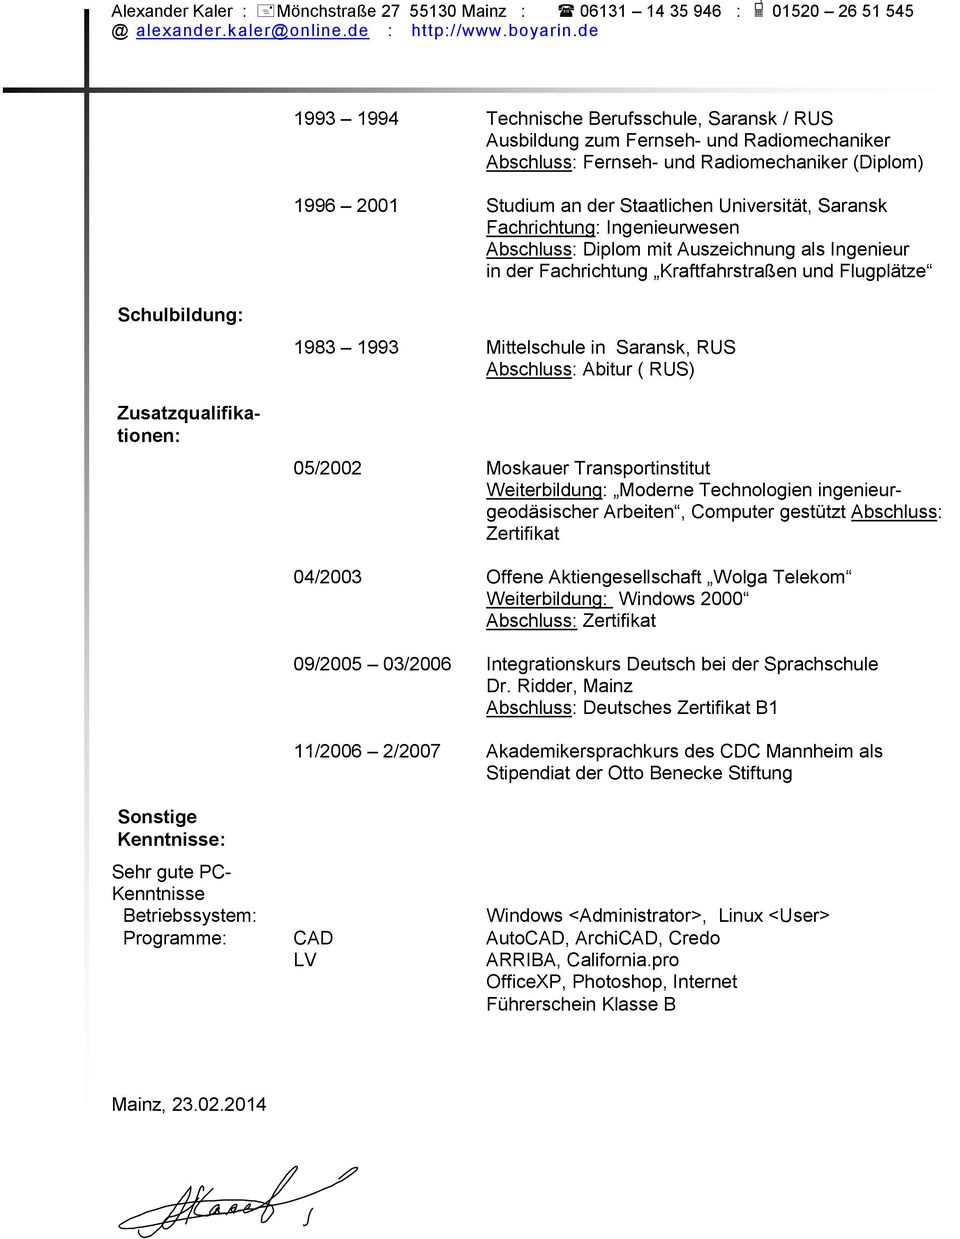 Saransk, RUS Abschluss: Abitur ( RUS) 05/2002 Moskauer Transportinstitut Weiterbildung: Moderne Technologien ingenieurgeodäsischer Arbeiten, Computer gestützt Abschluss: Zertifikat Sonstige